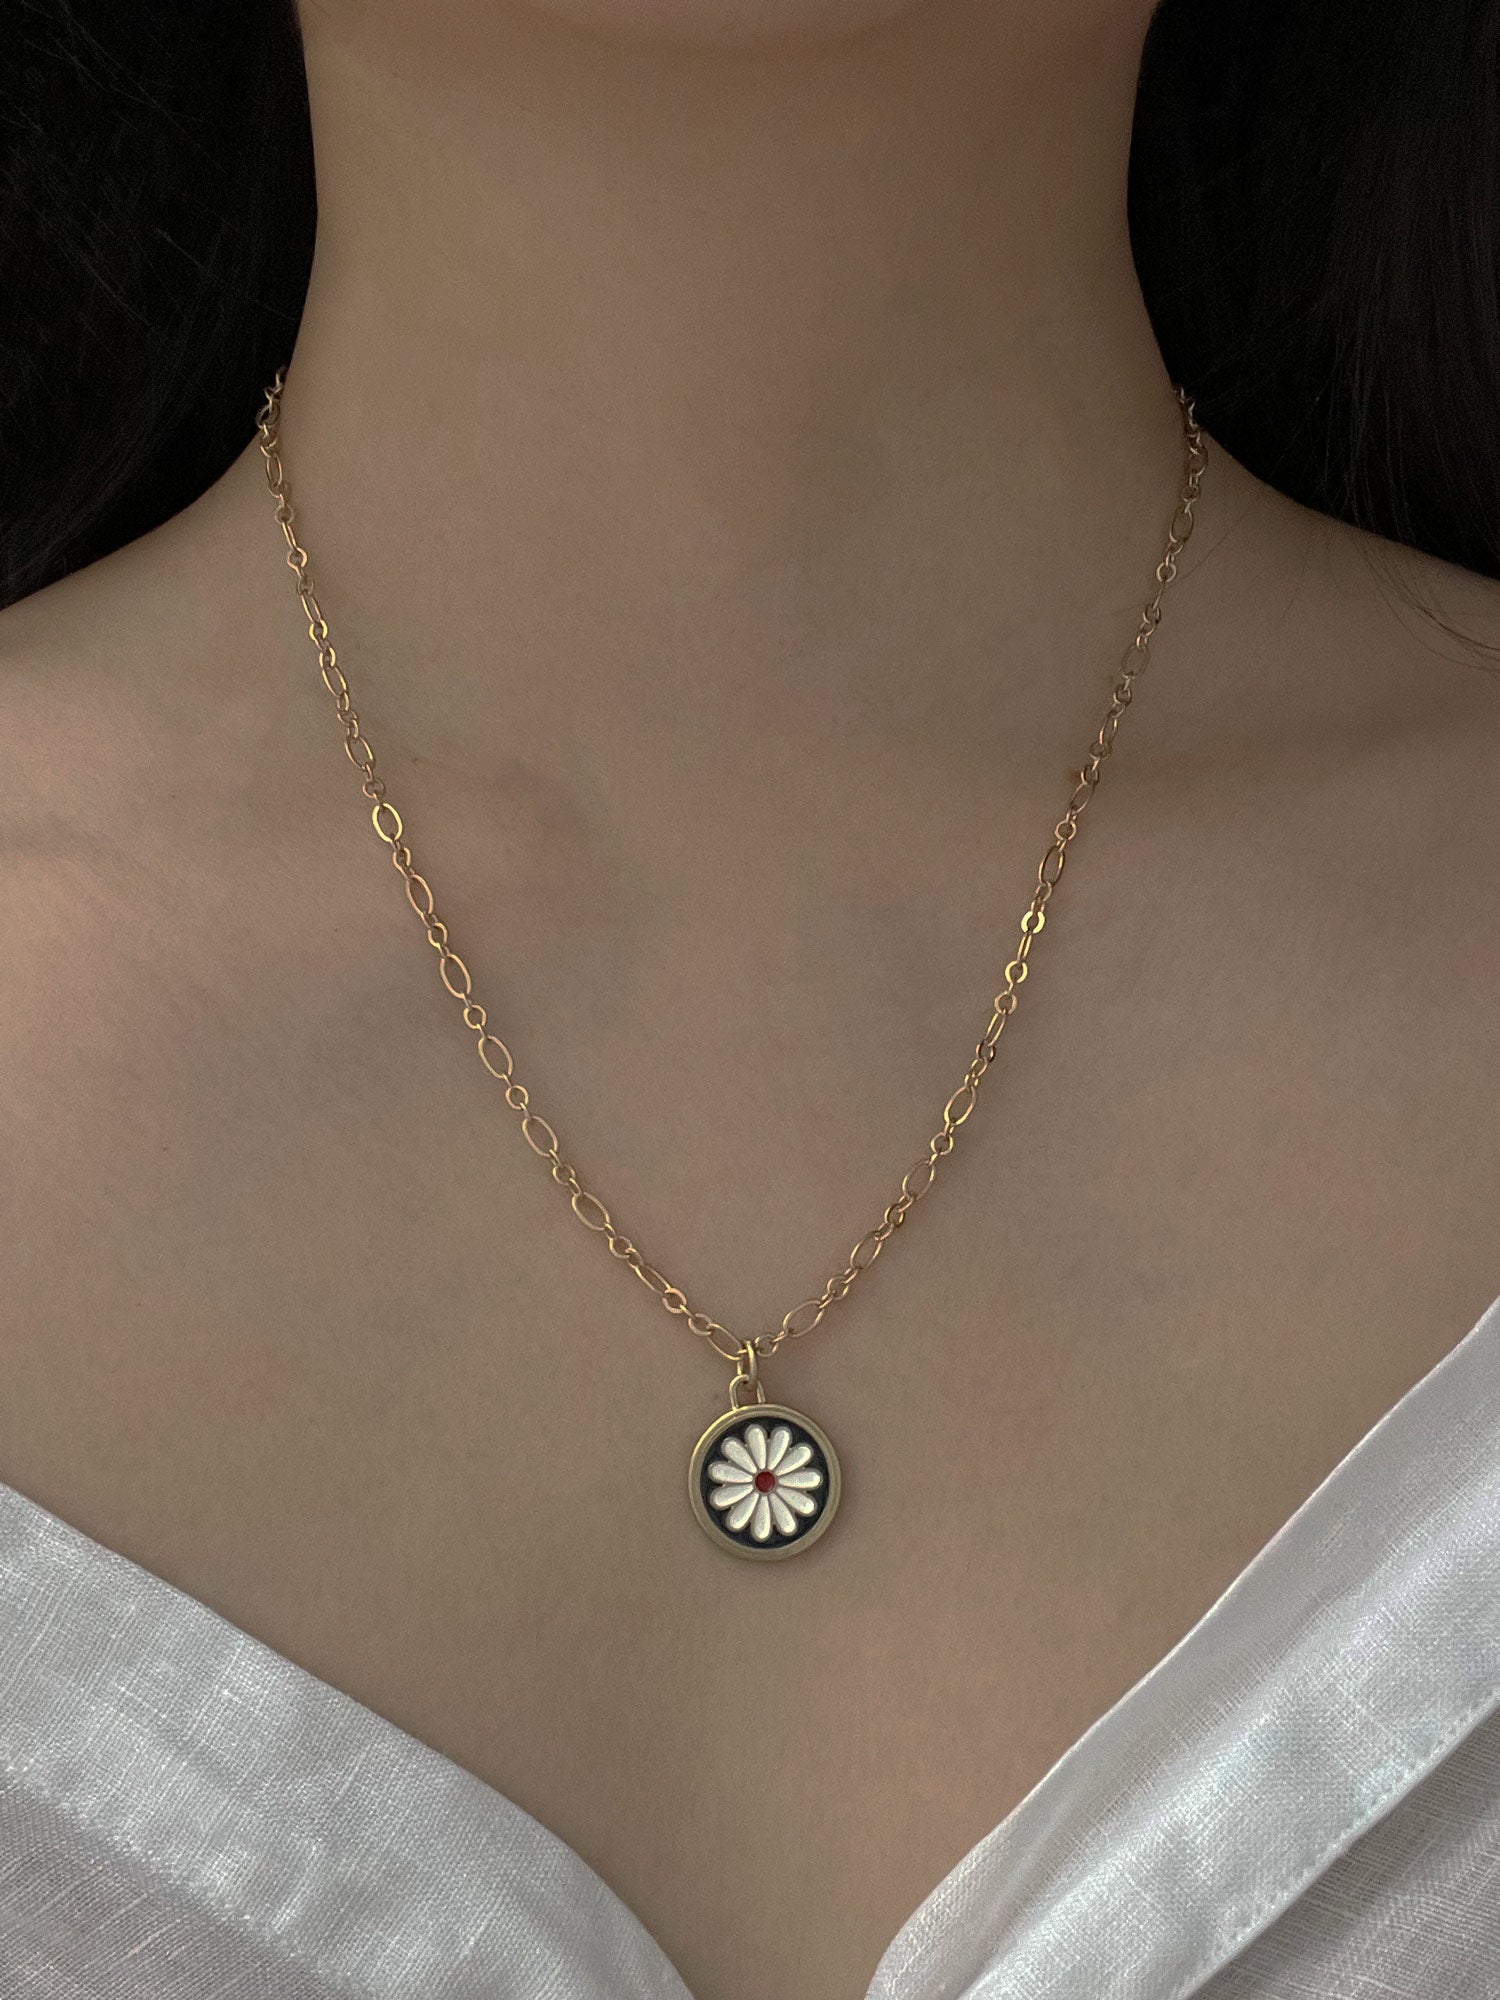 vintage flower necklace